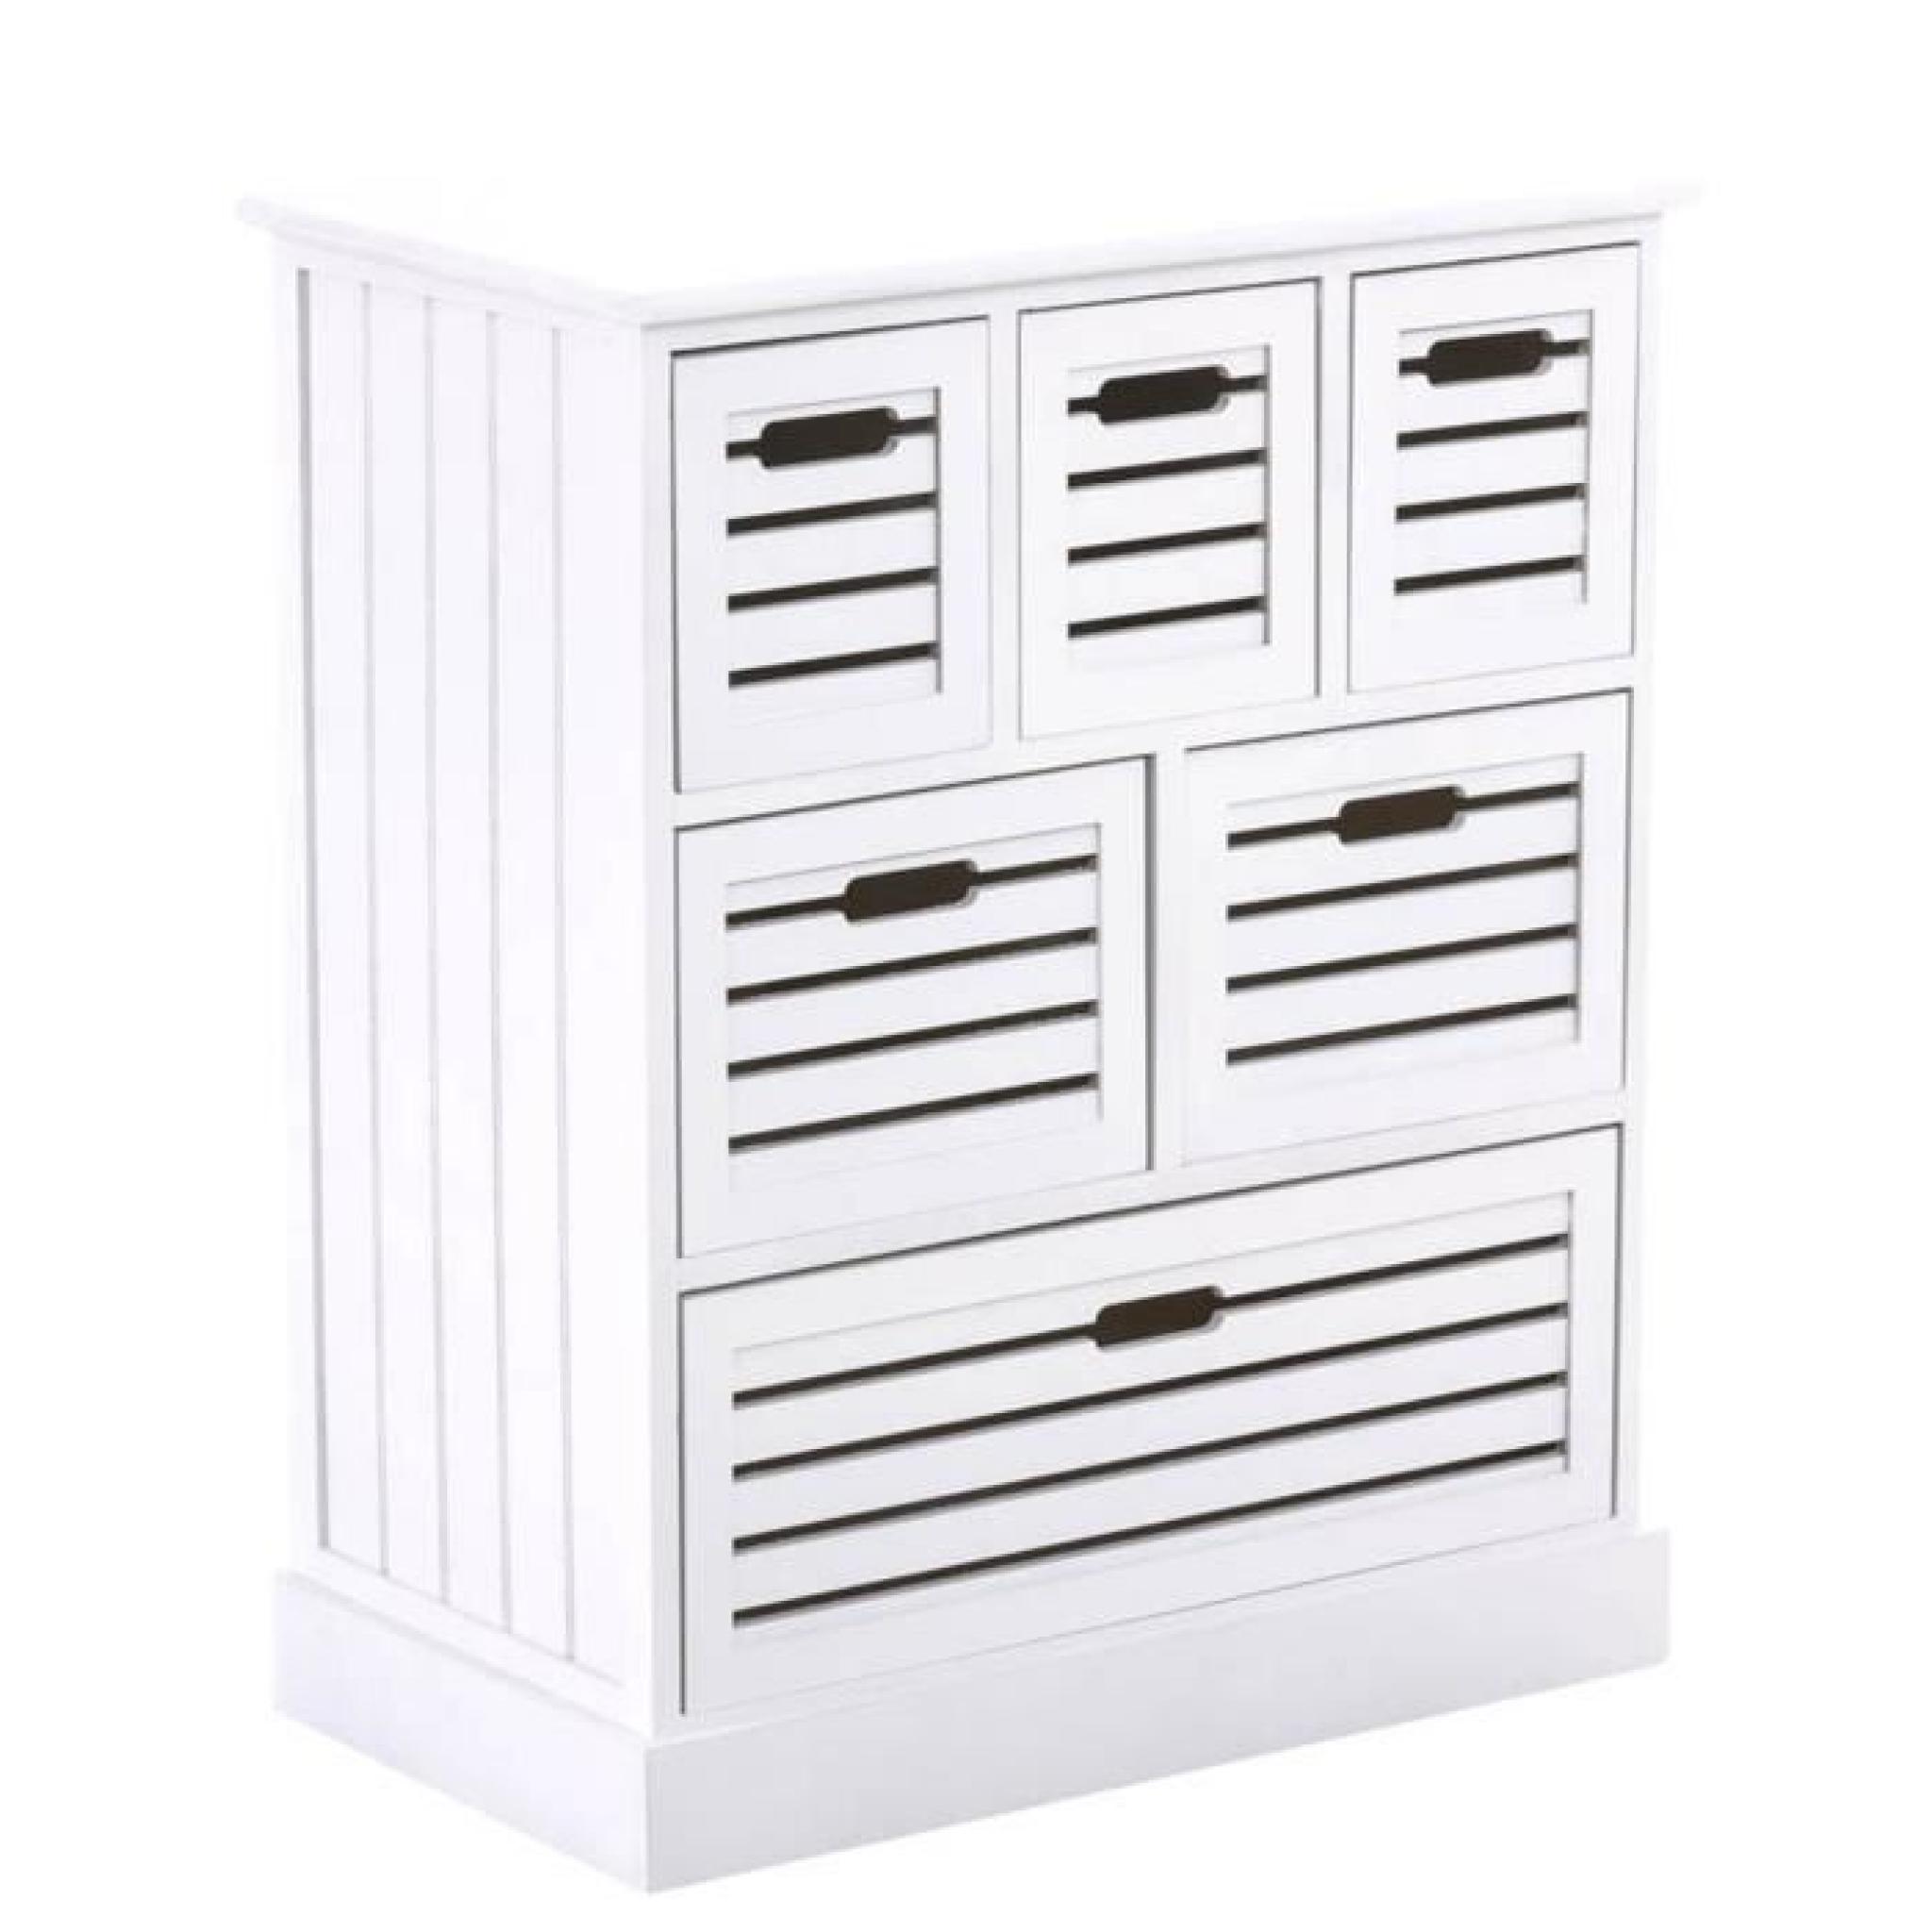 Commode en bois de couleur blanche avec 6 tiroirs - Dim : H 80 x L 65 x P 36 cm